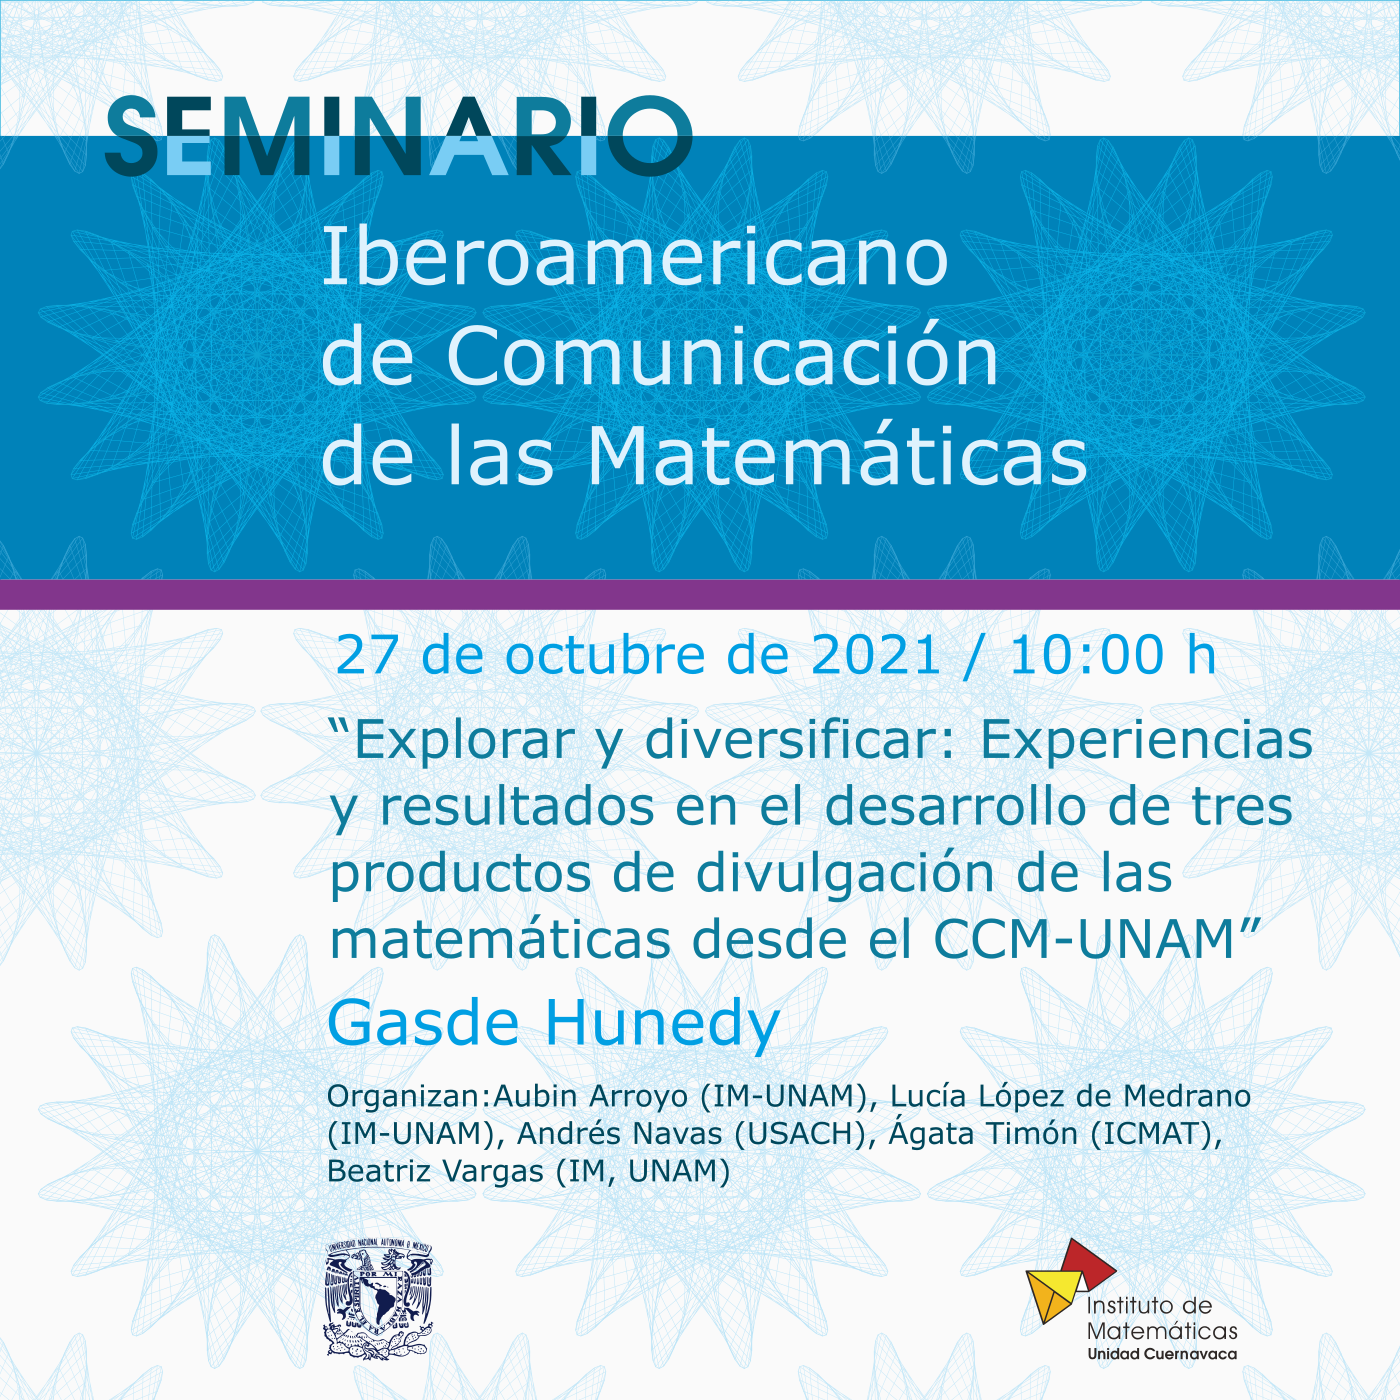 Seminario Iberoamericano de Comunicación de las Matemáticas - 27 de octubre